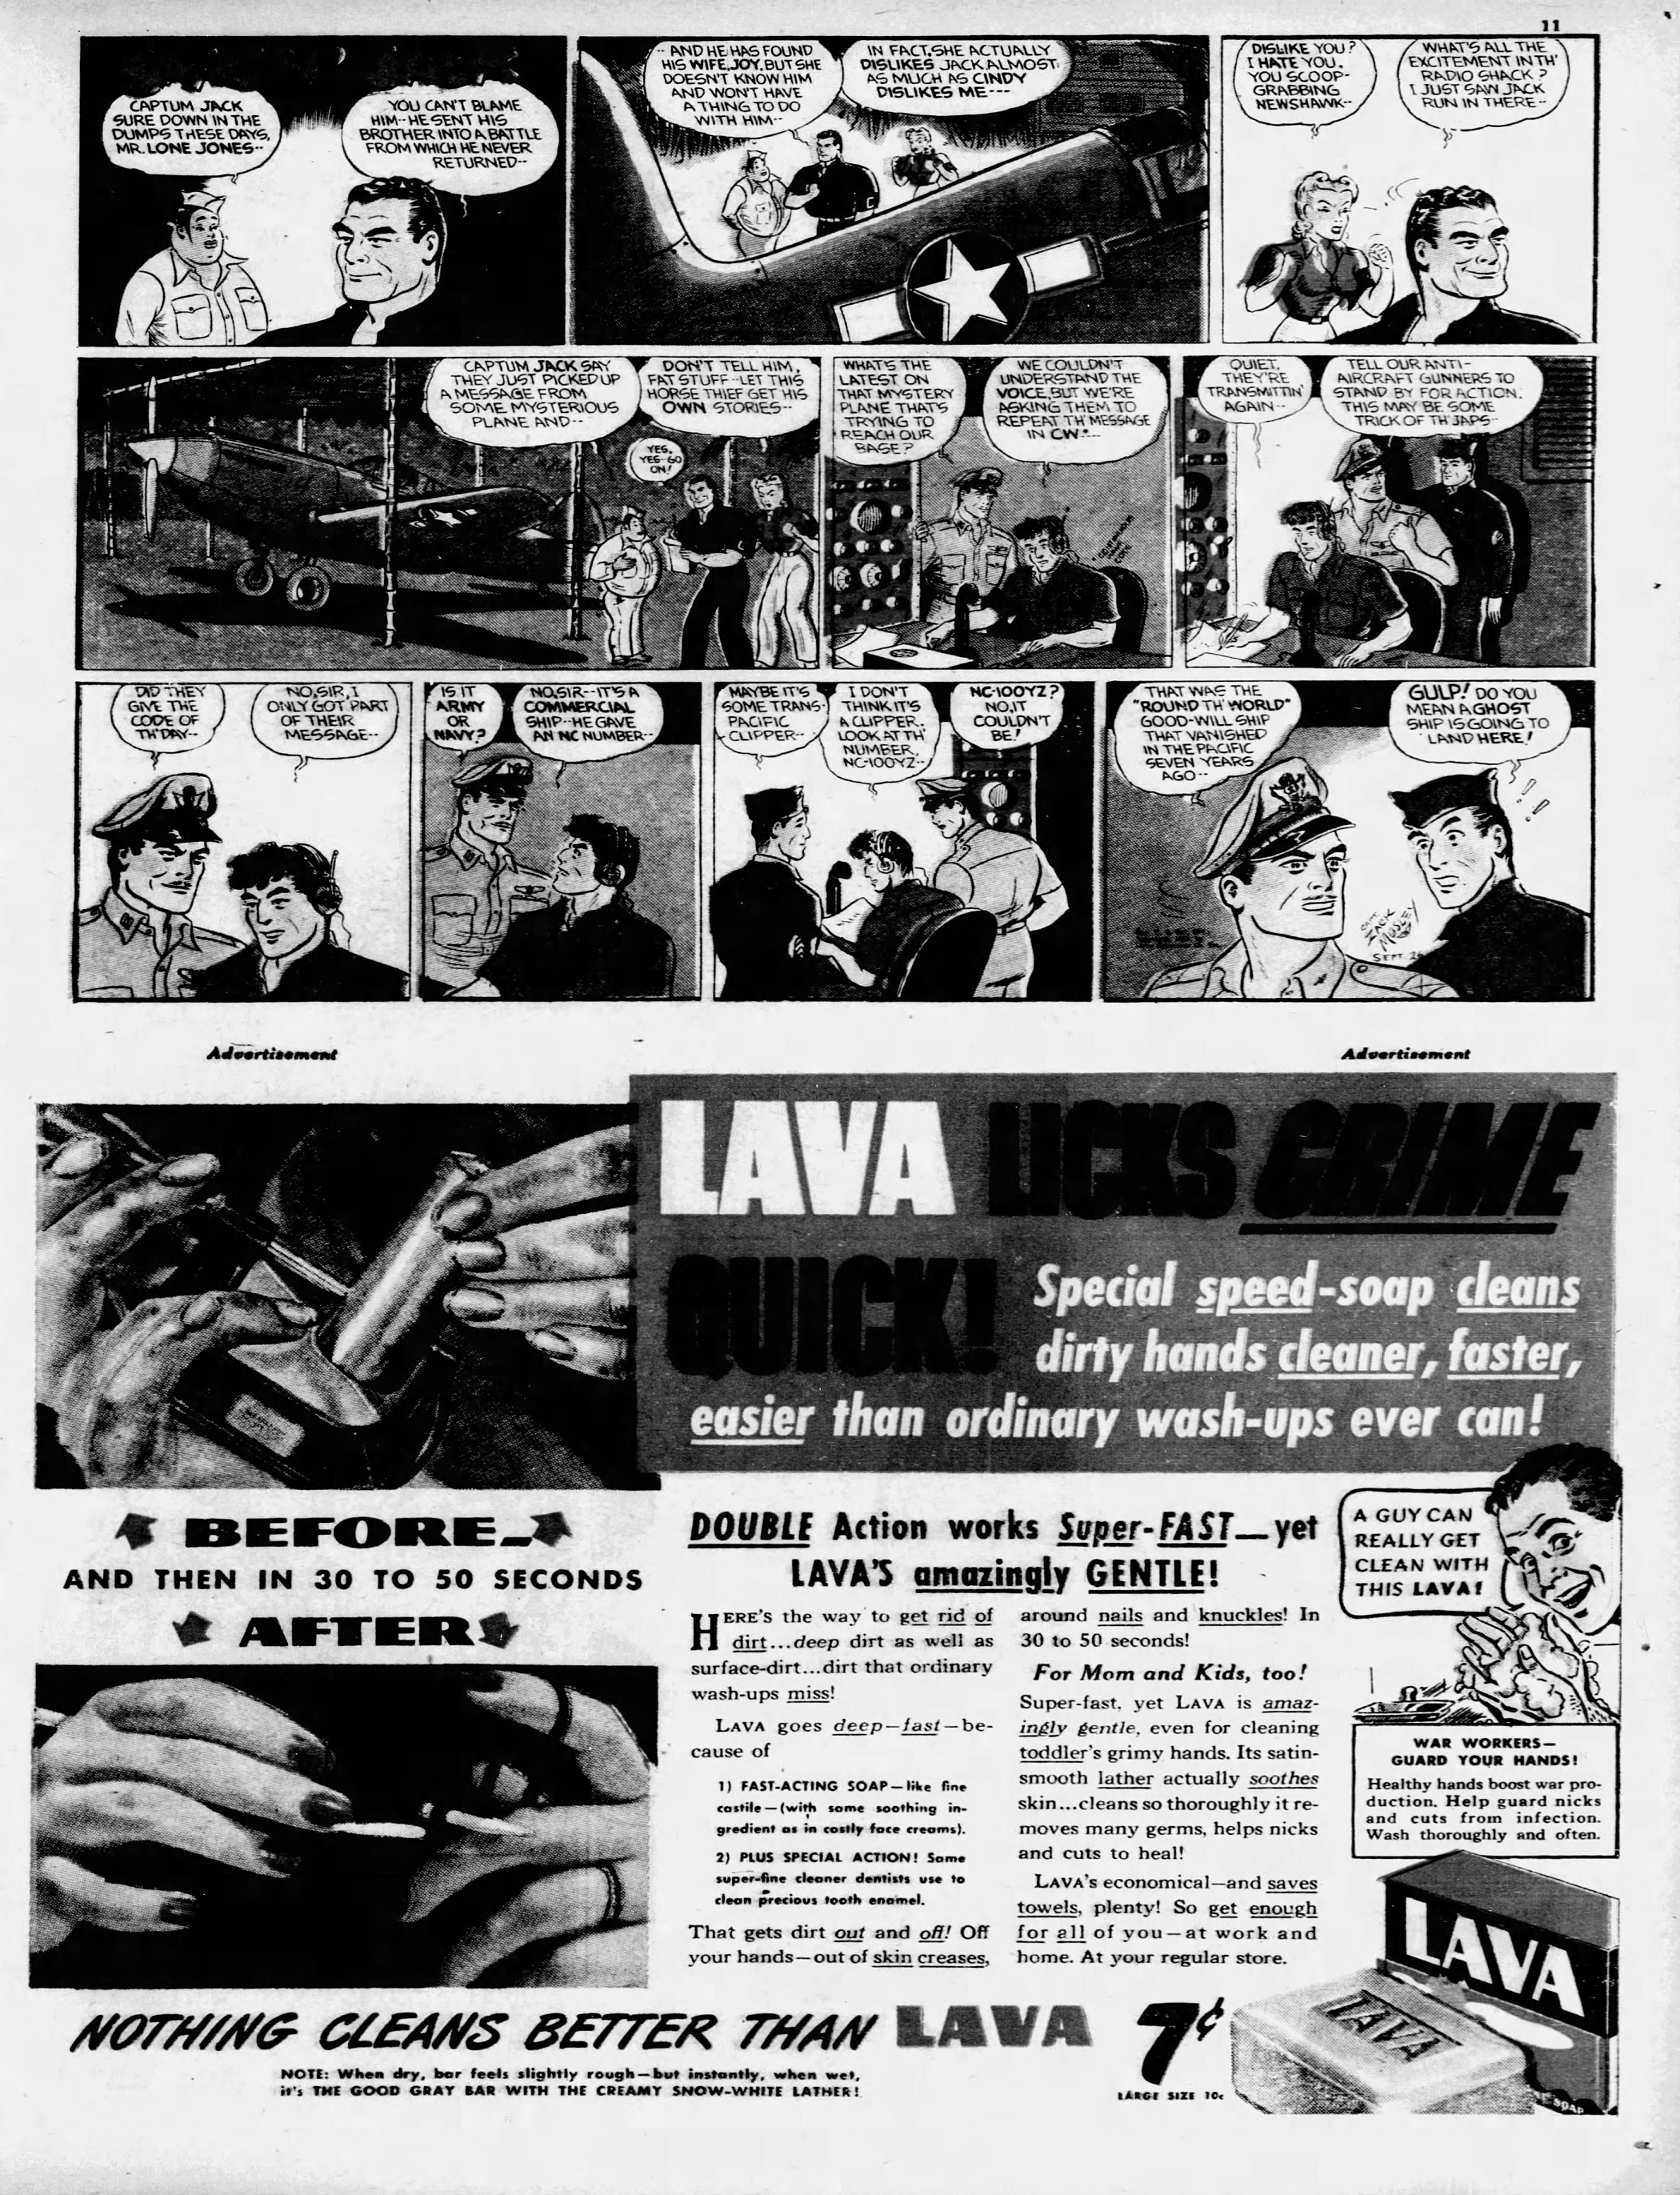 Daily_News_Sun__Sep_26__1943_(8).jpg